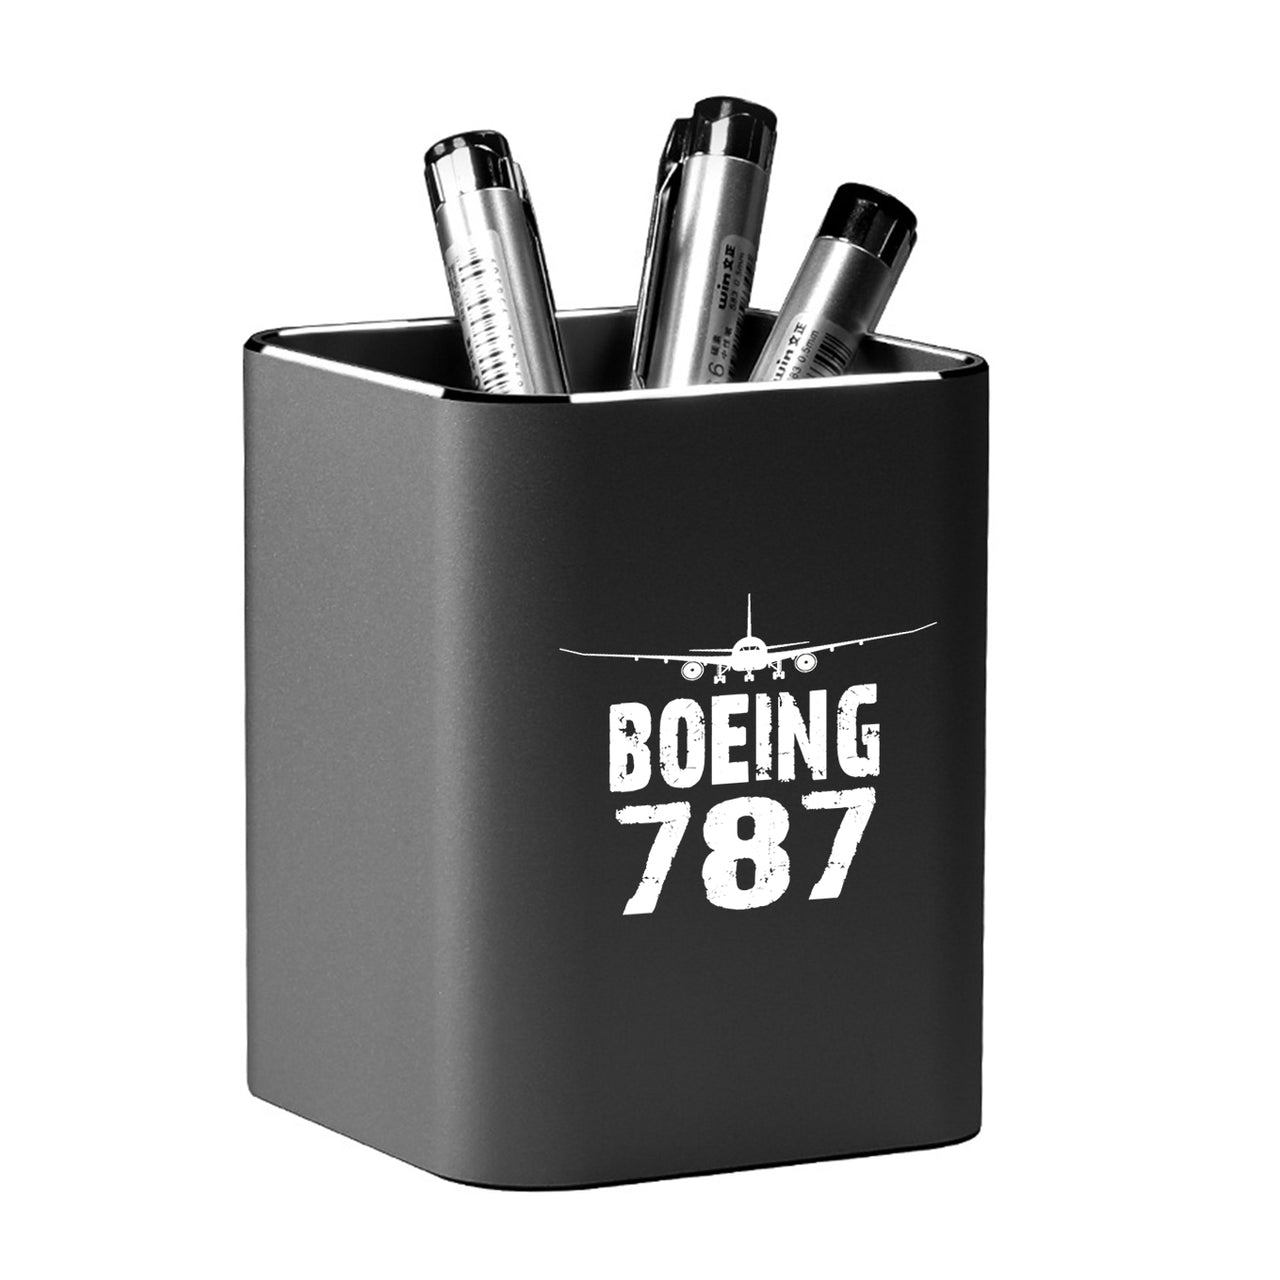 Boeing 787 & Plane Designed Aluminium Alloy Pen Holders